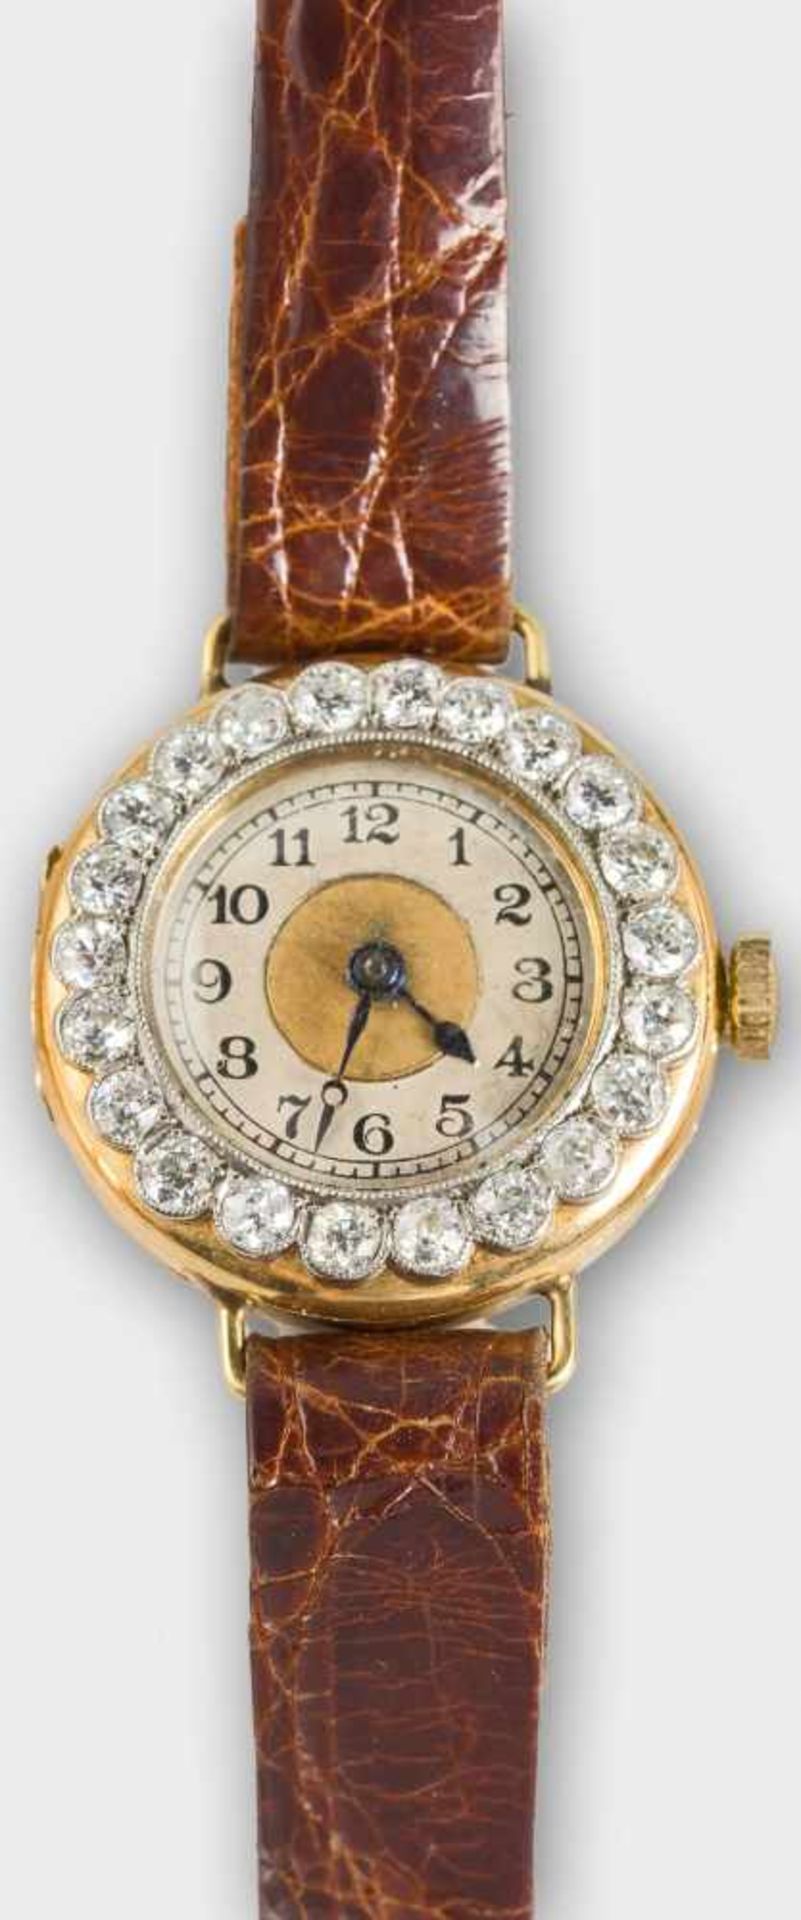 Vintage-Armbanduhr mit Brillantlunette.London, um 1912.18 ct Gold. Rundes Uhrgehäuse mit silbrigem